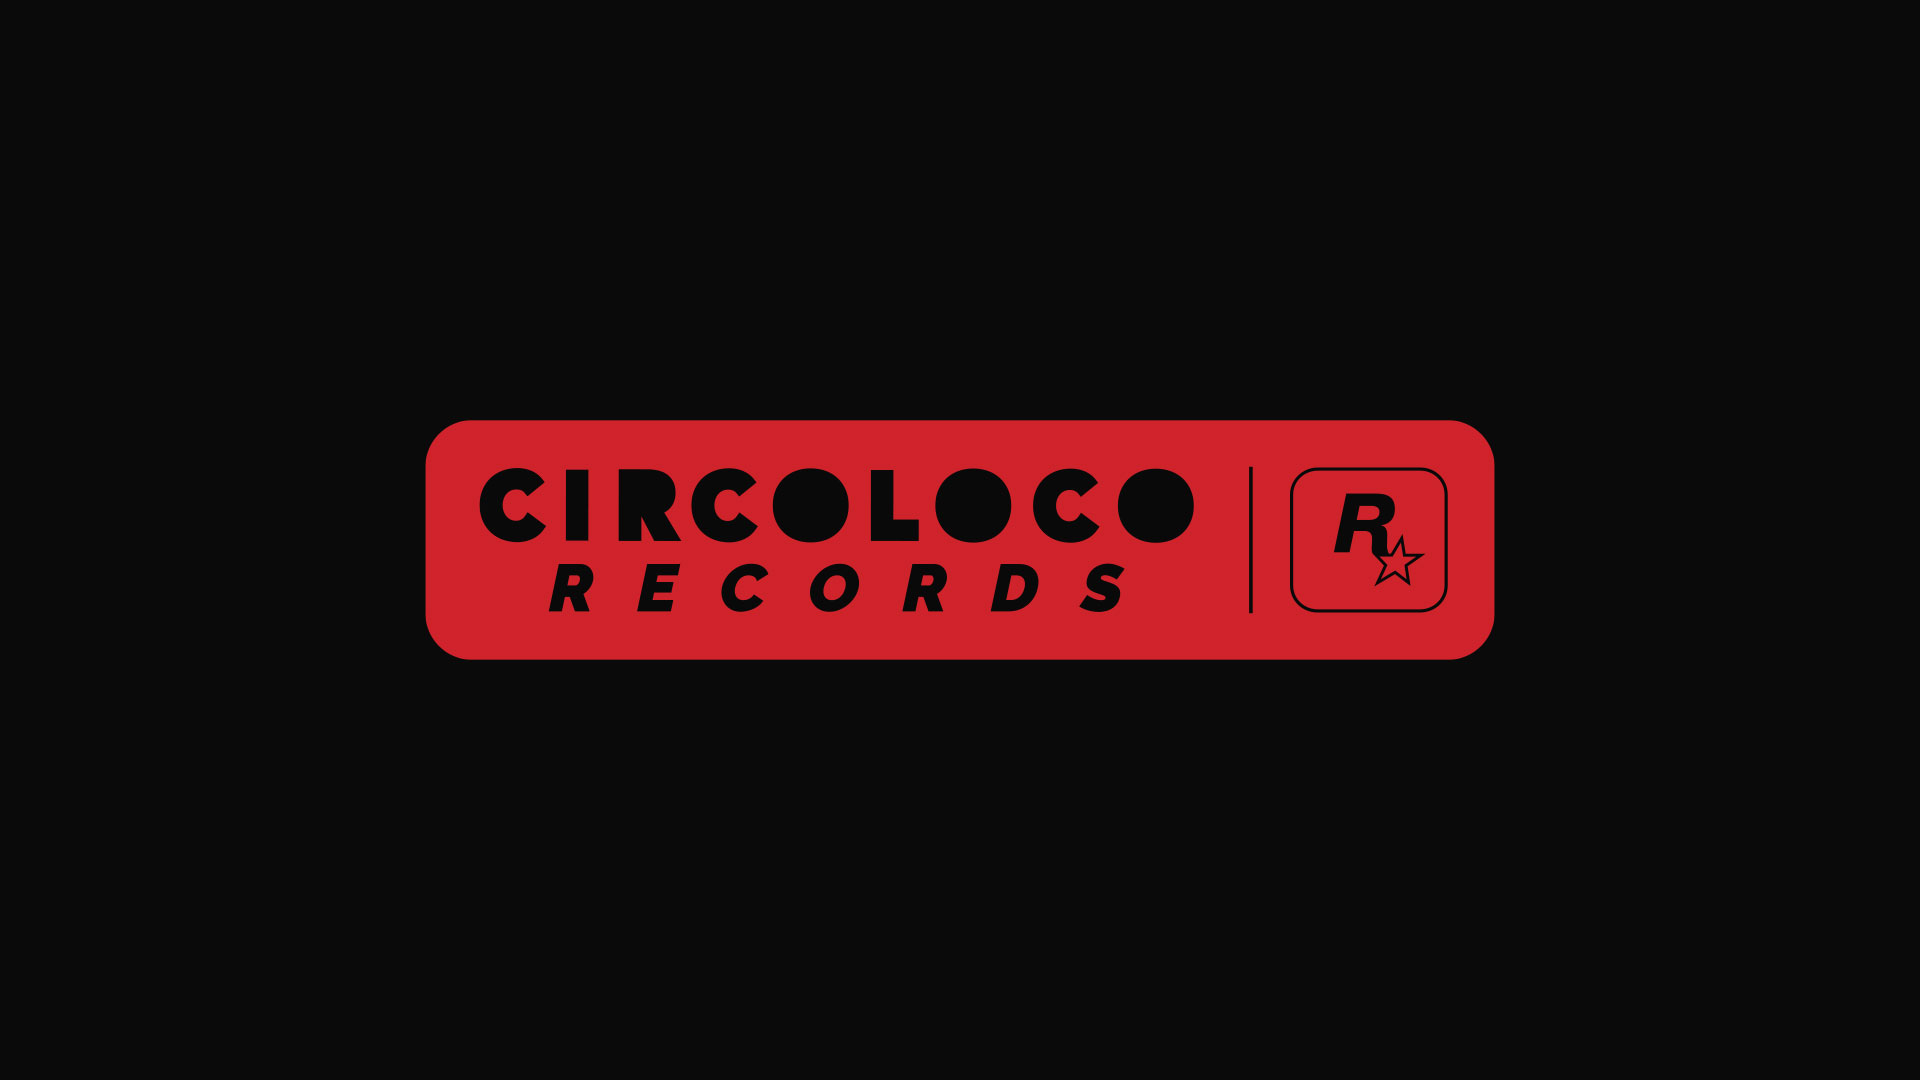 شرکت Rockstar انتشارات موسیقی CircoLoco را تاسیس کرد